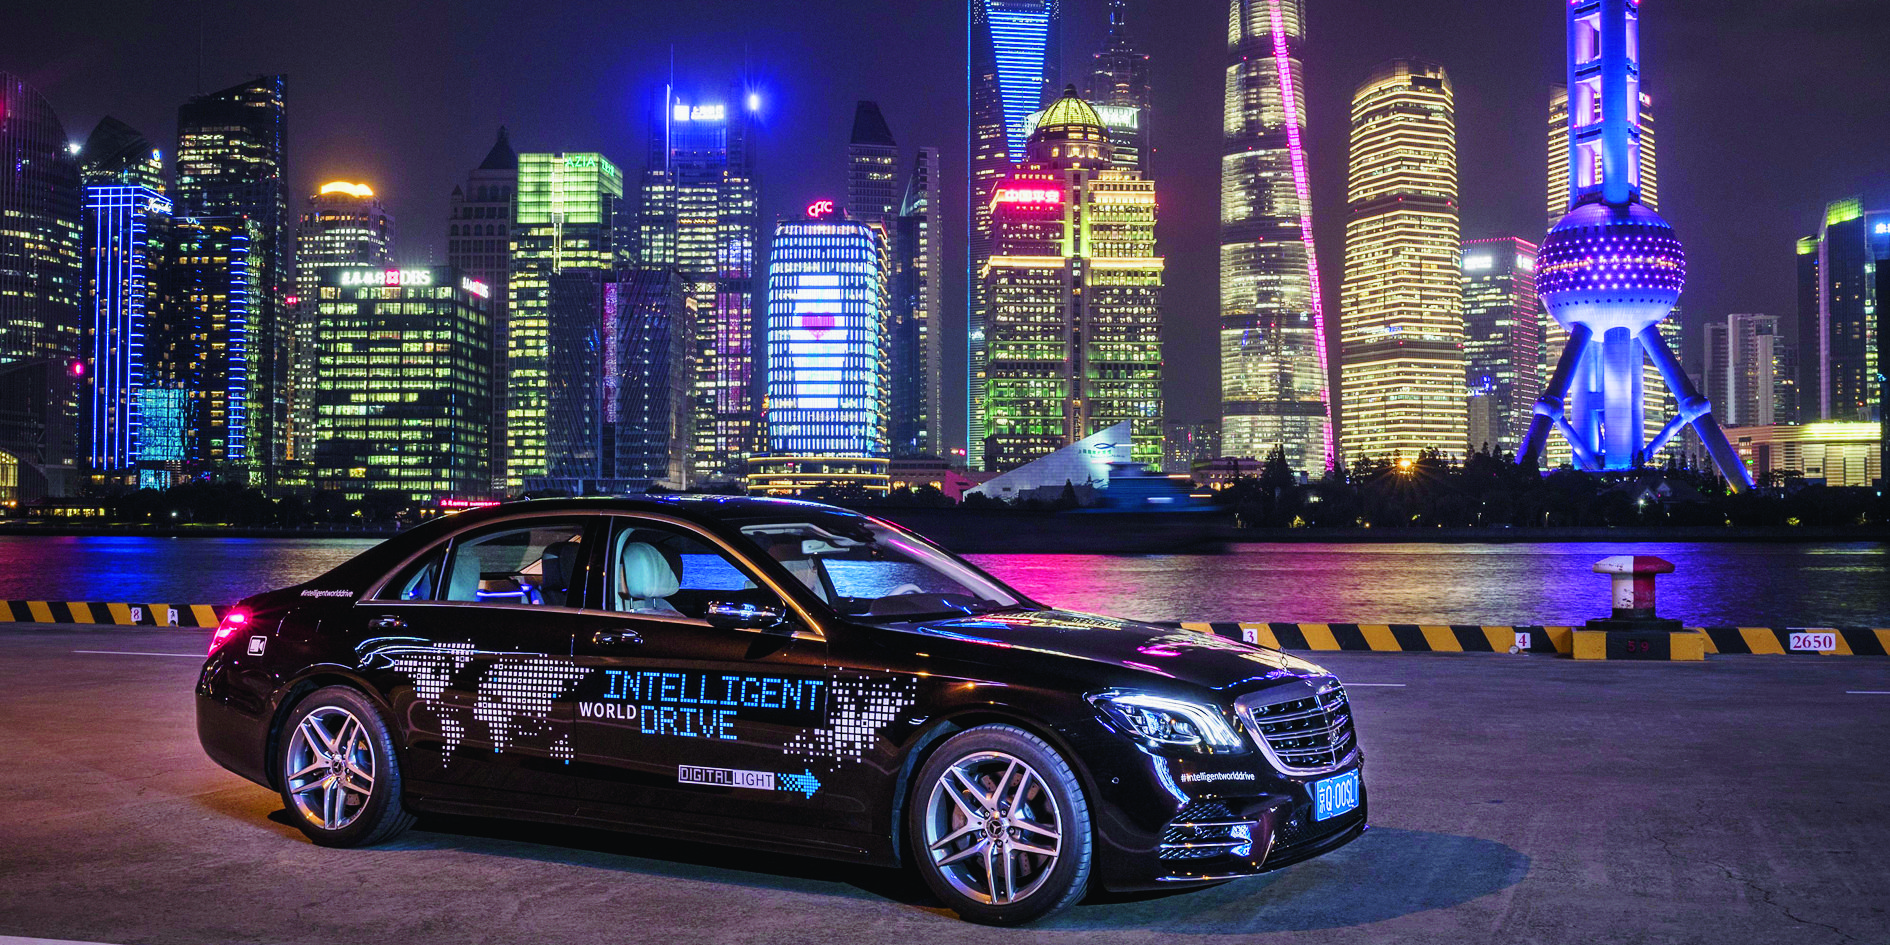 Mit dem Intelligent World Drive testet Mercedes-Benz mit einem Erprobungsfahrzeug auf Basis der S-Klasse automatisierte Fahrfunktionen auf f¸nf Kontinenten. Nach dem Start in Deutschland ist das Erprobungsfahrzeug, das auf der neuen Serien-Limousine der S-Klasse basiert, im Oktober bei automatisierten Testfahrten im dichten Verkehr und mit den landesspezifischen Besonderheiten in der chinesischen Millionenmetropole Shanghai unterwegs. 

With the 'Intelligent World Drive', Mercedes-Benz is testing automated driving functions on five continents using a test vehicle based on the S-Class. After the start in Germany, the test vehicle based on the new production S-Class Saloon is now being put through its paces in test drives in the heavy traffic and exposed to the special national features in the Chinese megalopolis of Shanghai in October.  17C862_066